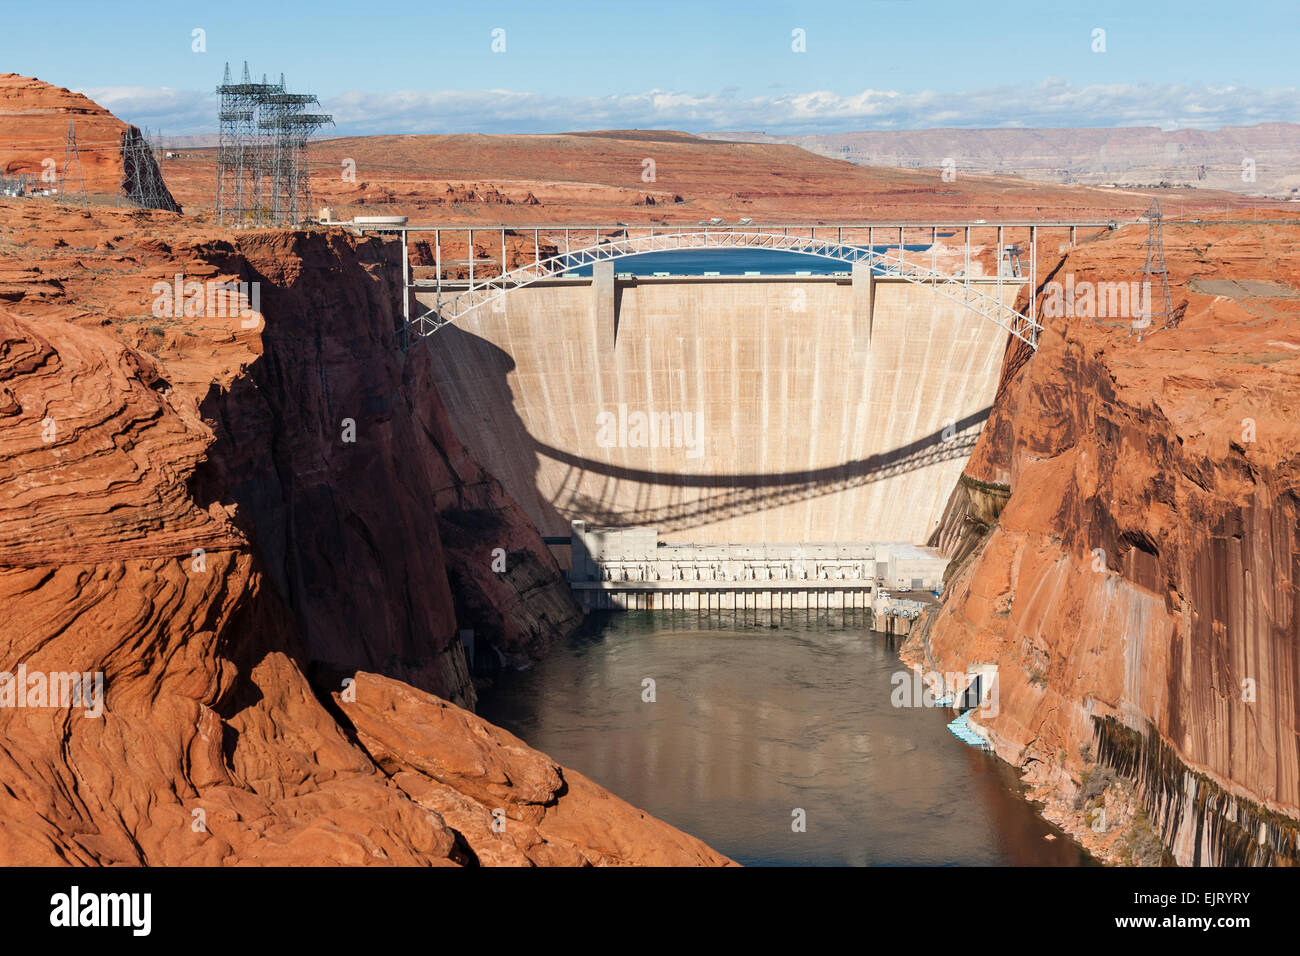 Barrage de Glen Canyon générant de l'hydroélectricité à faible émission de carbone à partir du fleuve Colorado près de page, en Arizona Banque D'Images